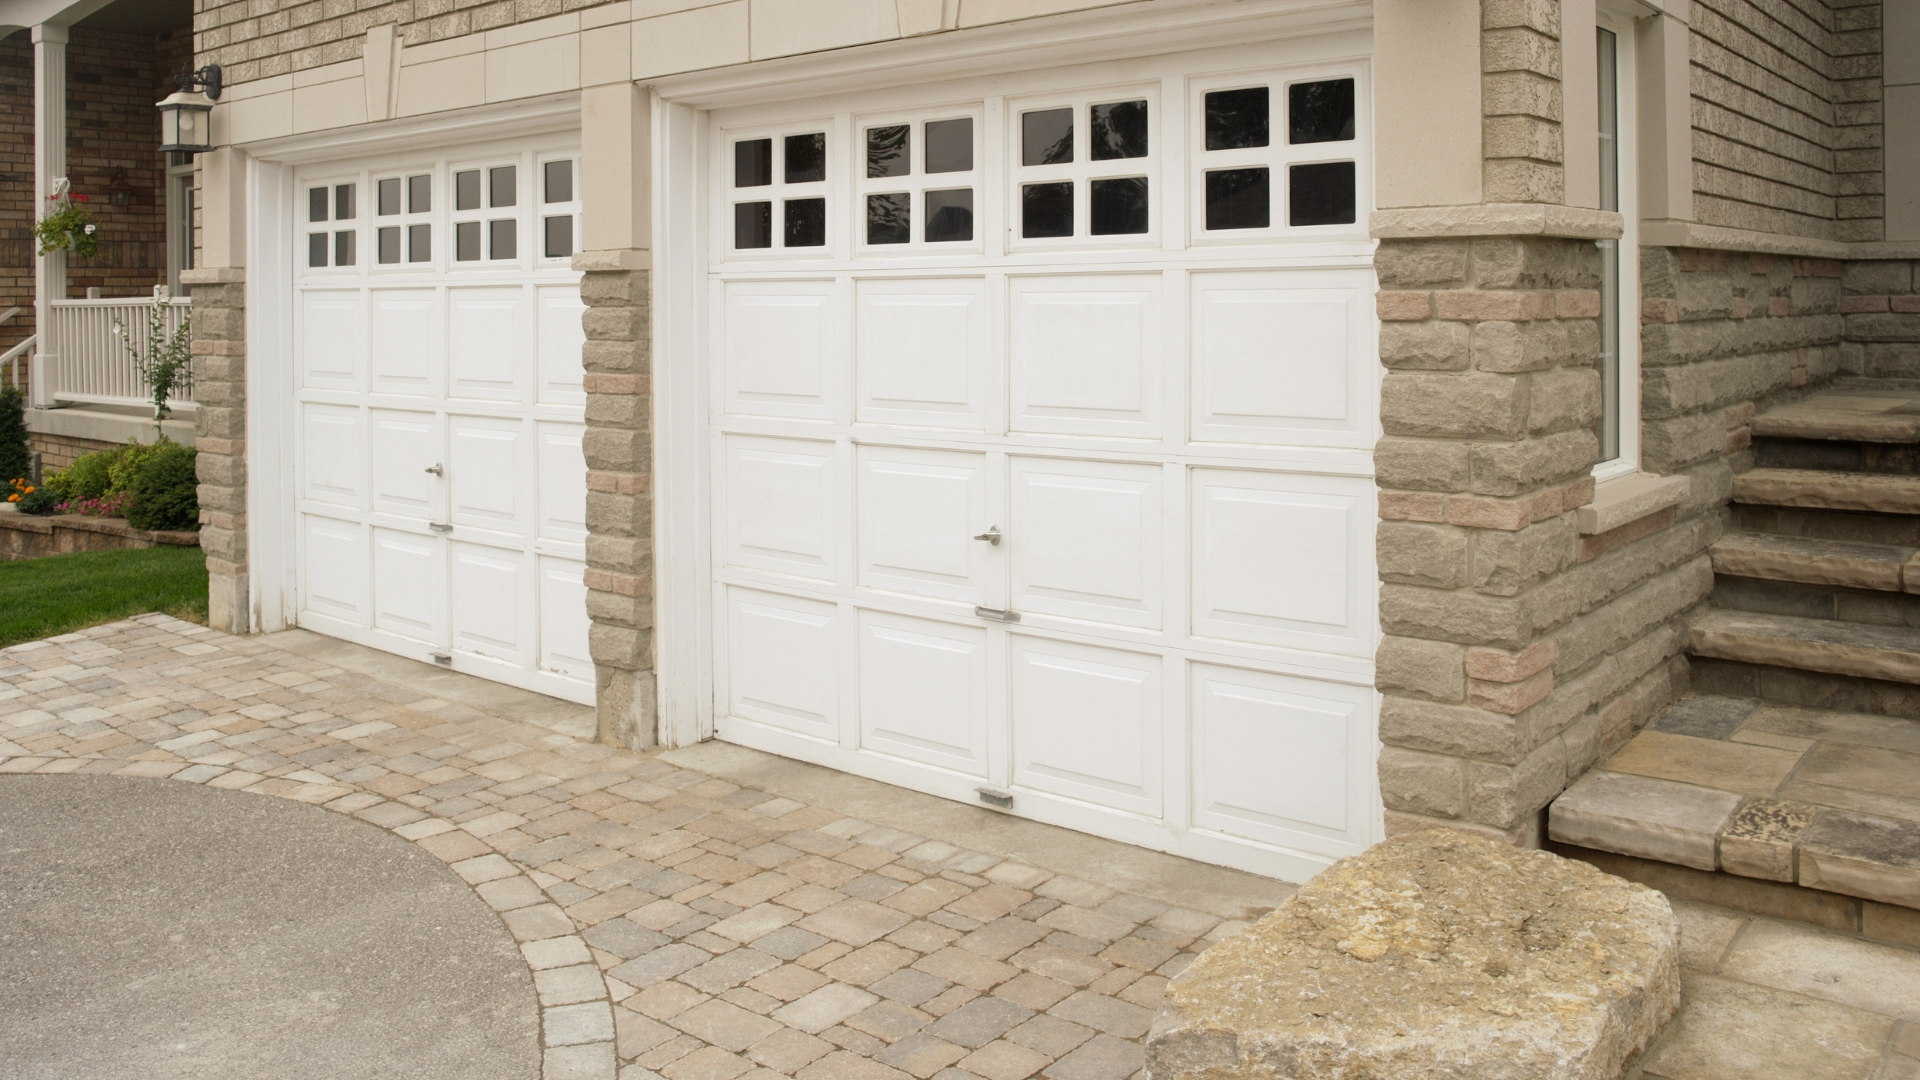 Two new single doors with garage door warranty